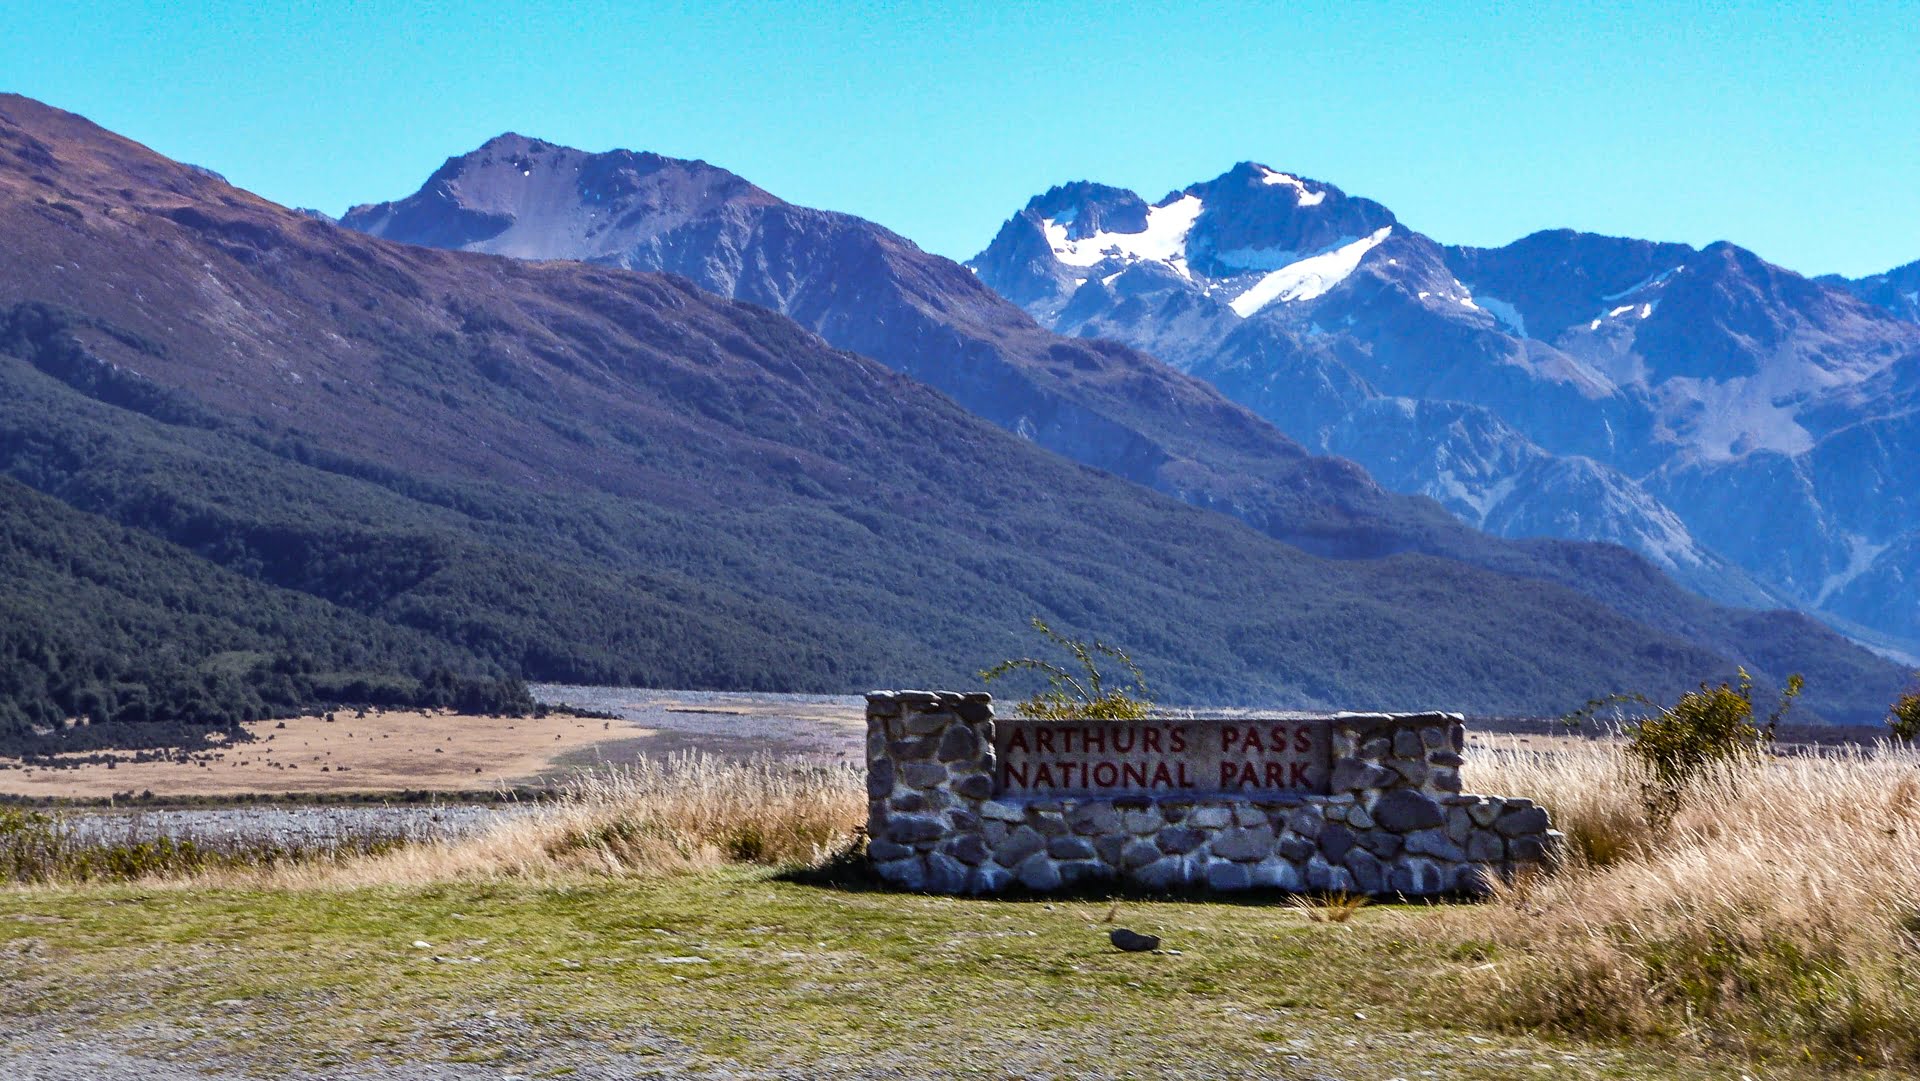 Parc national Arthur's pass en Nouvelle Zélande- Les plus beaux paysages et parcs naturels d'Océanie